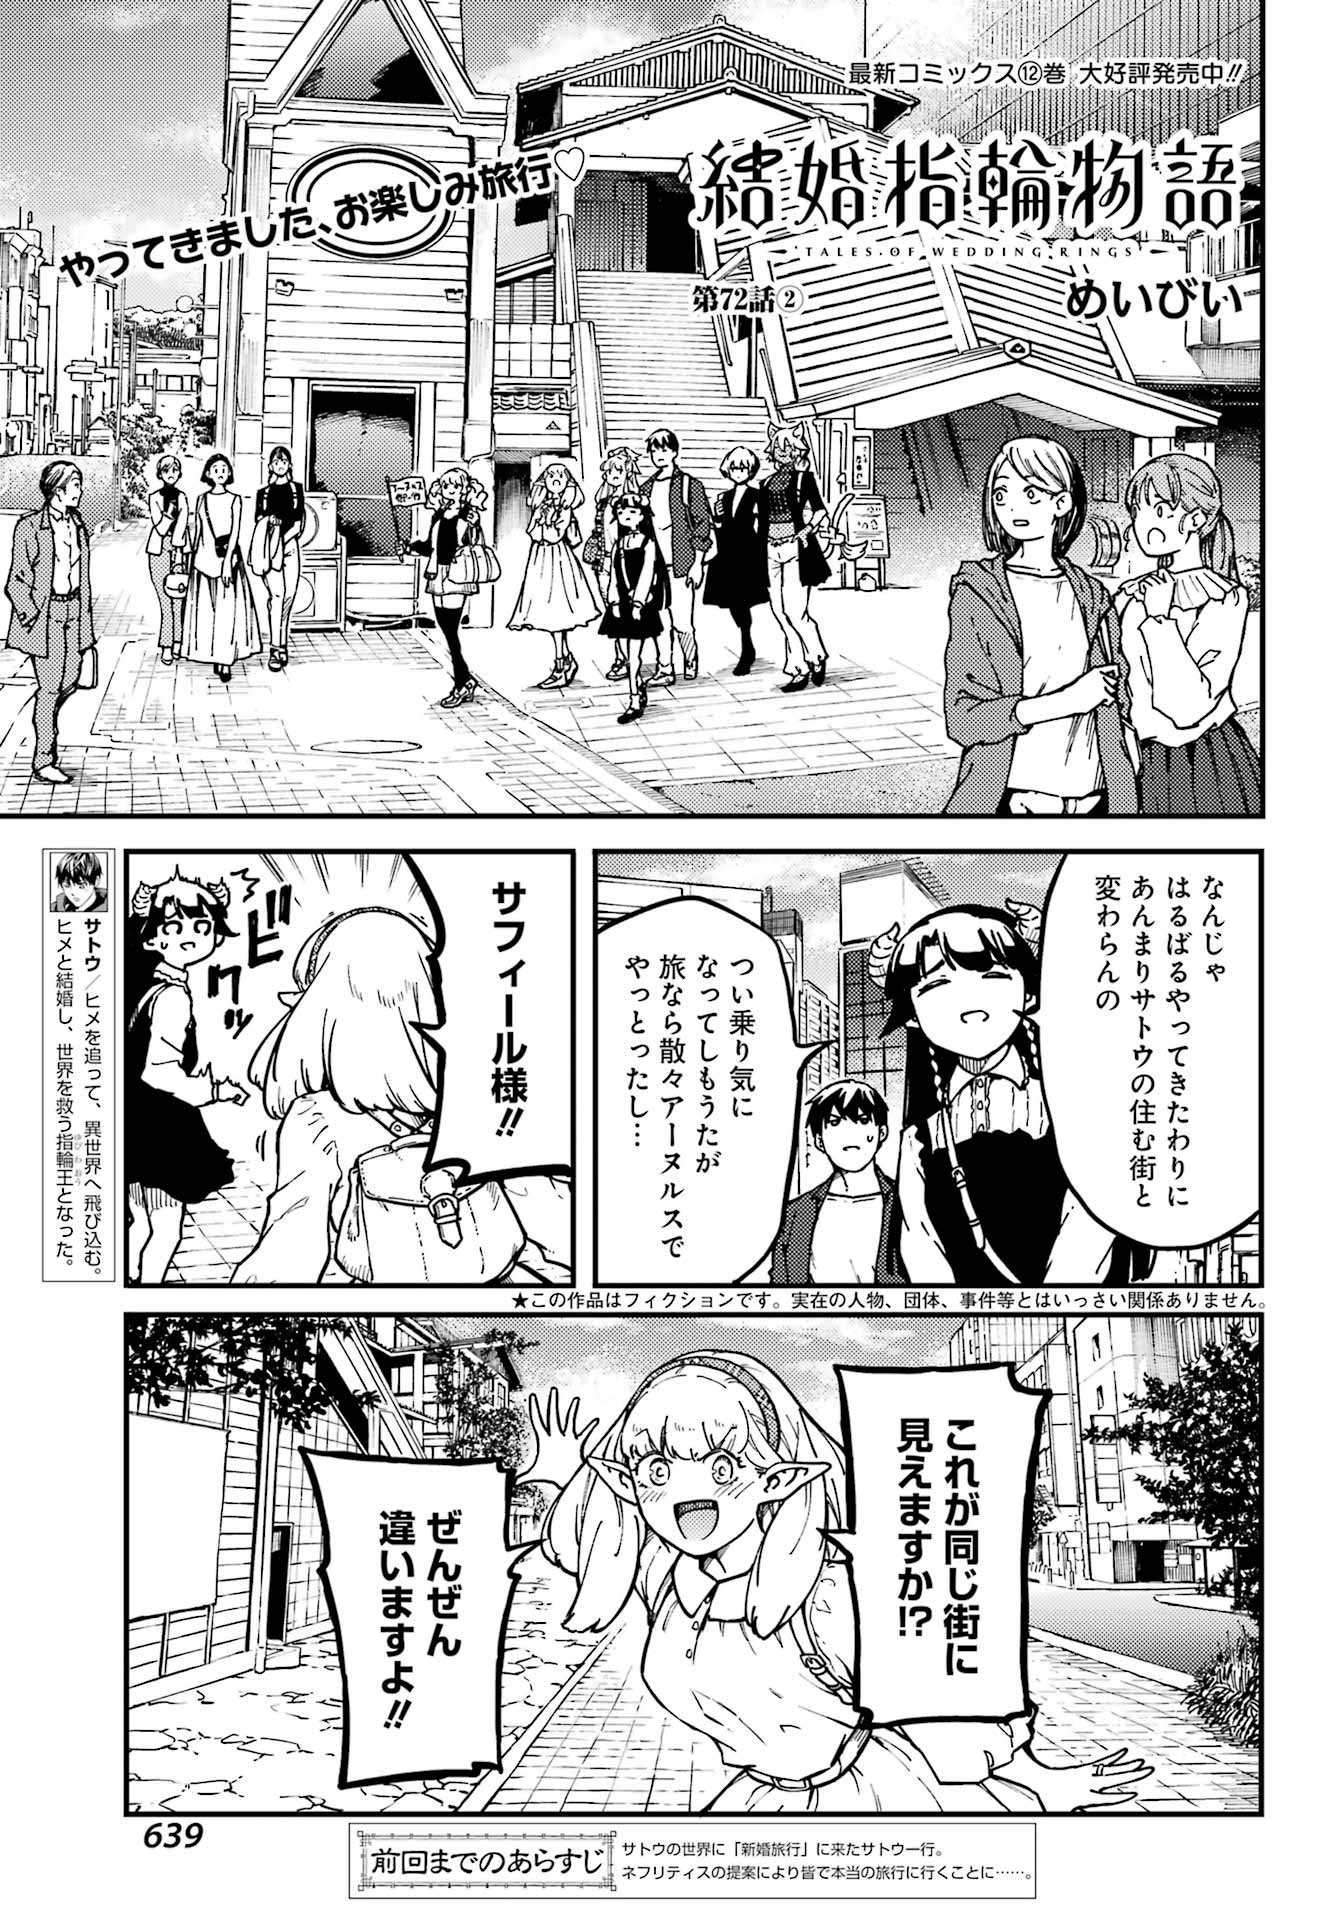 Kekkon Yubiwa Monogatari - Chapter 72-2 - Page 1